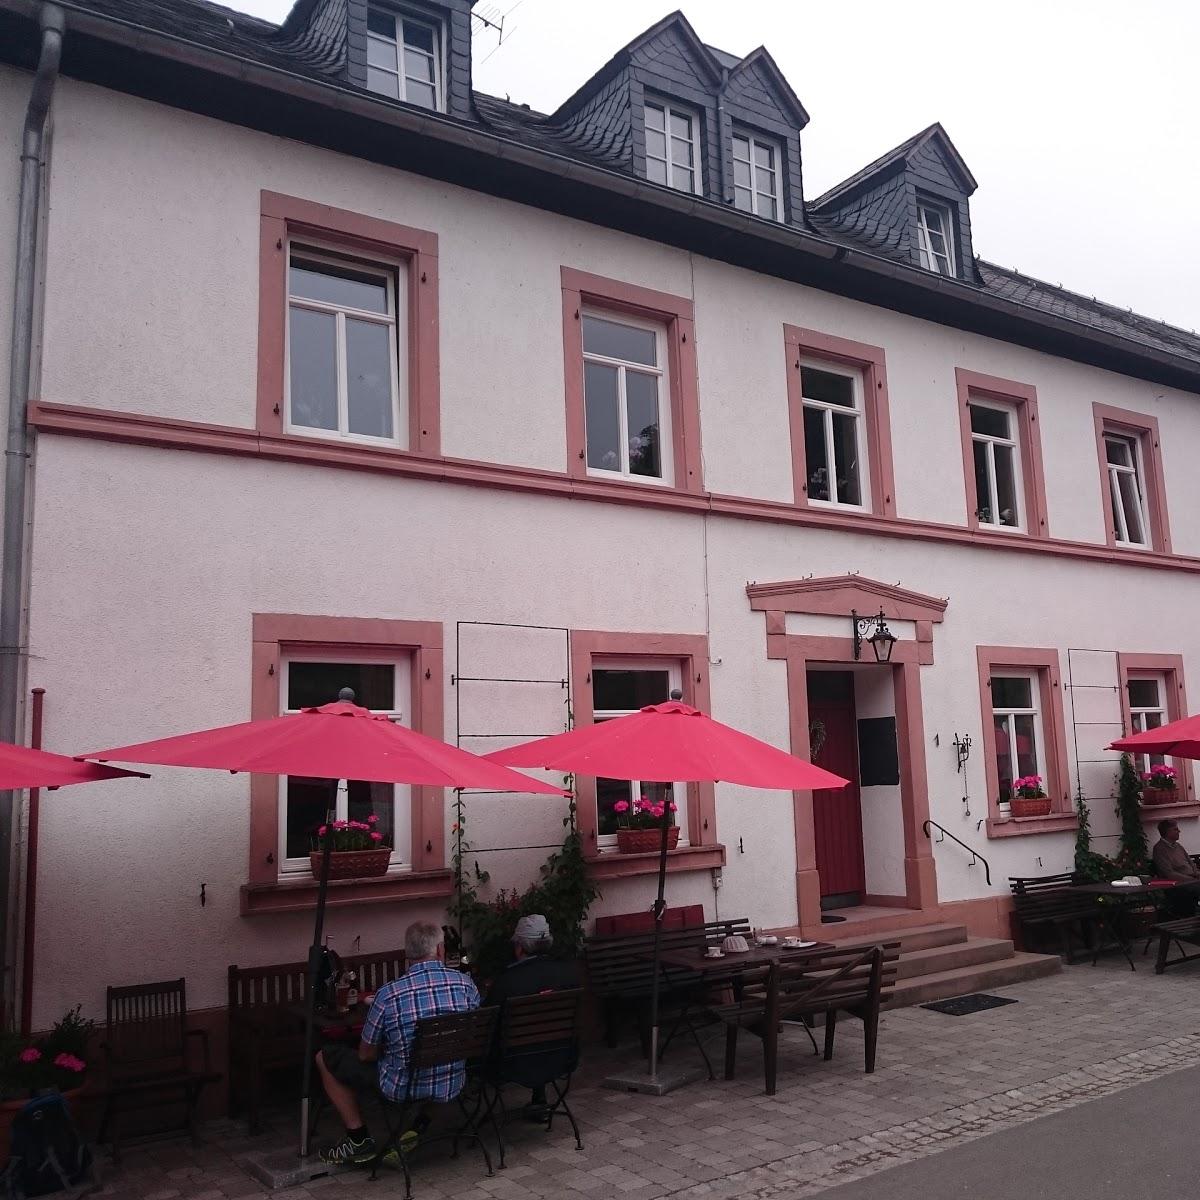 Restaurant "Bauernhofcafe" in Morbach